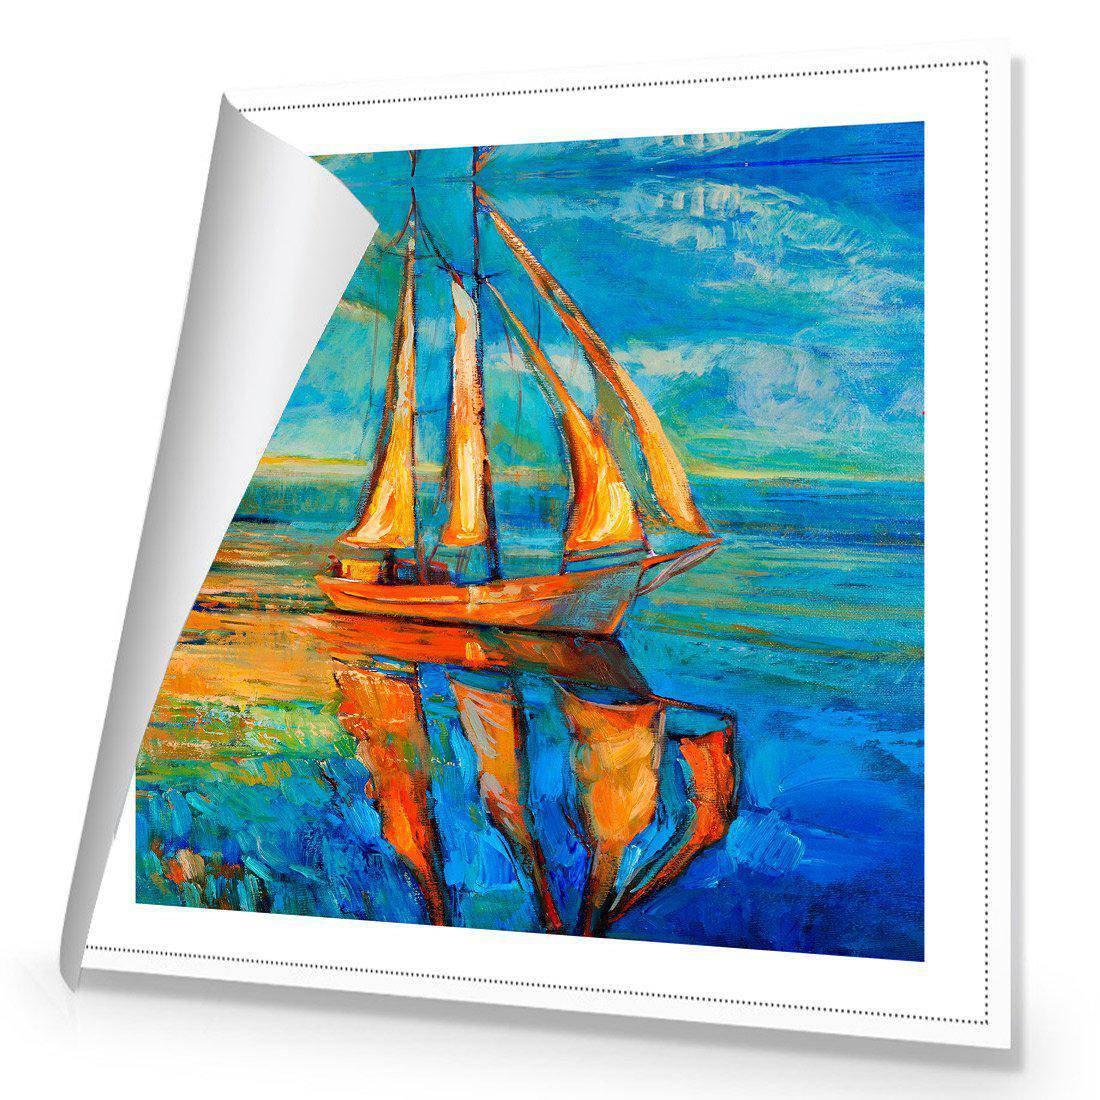 Sailing Boat Reflected Canvas Art-Canvas-Wall Art Designs-30x30cm-Rolled Canvas-Wall Art Designs